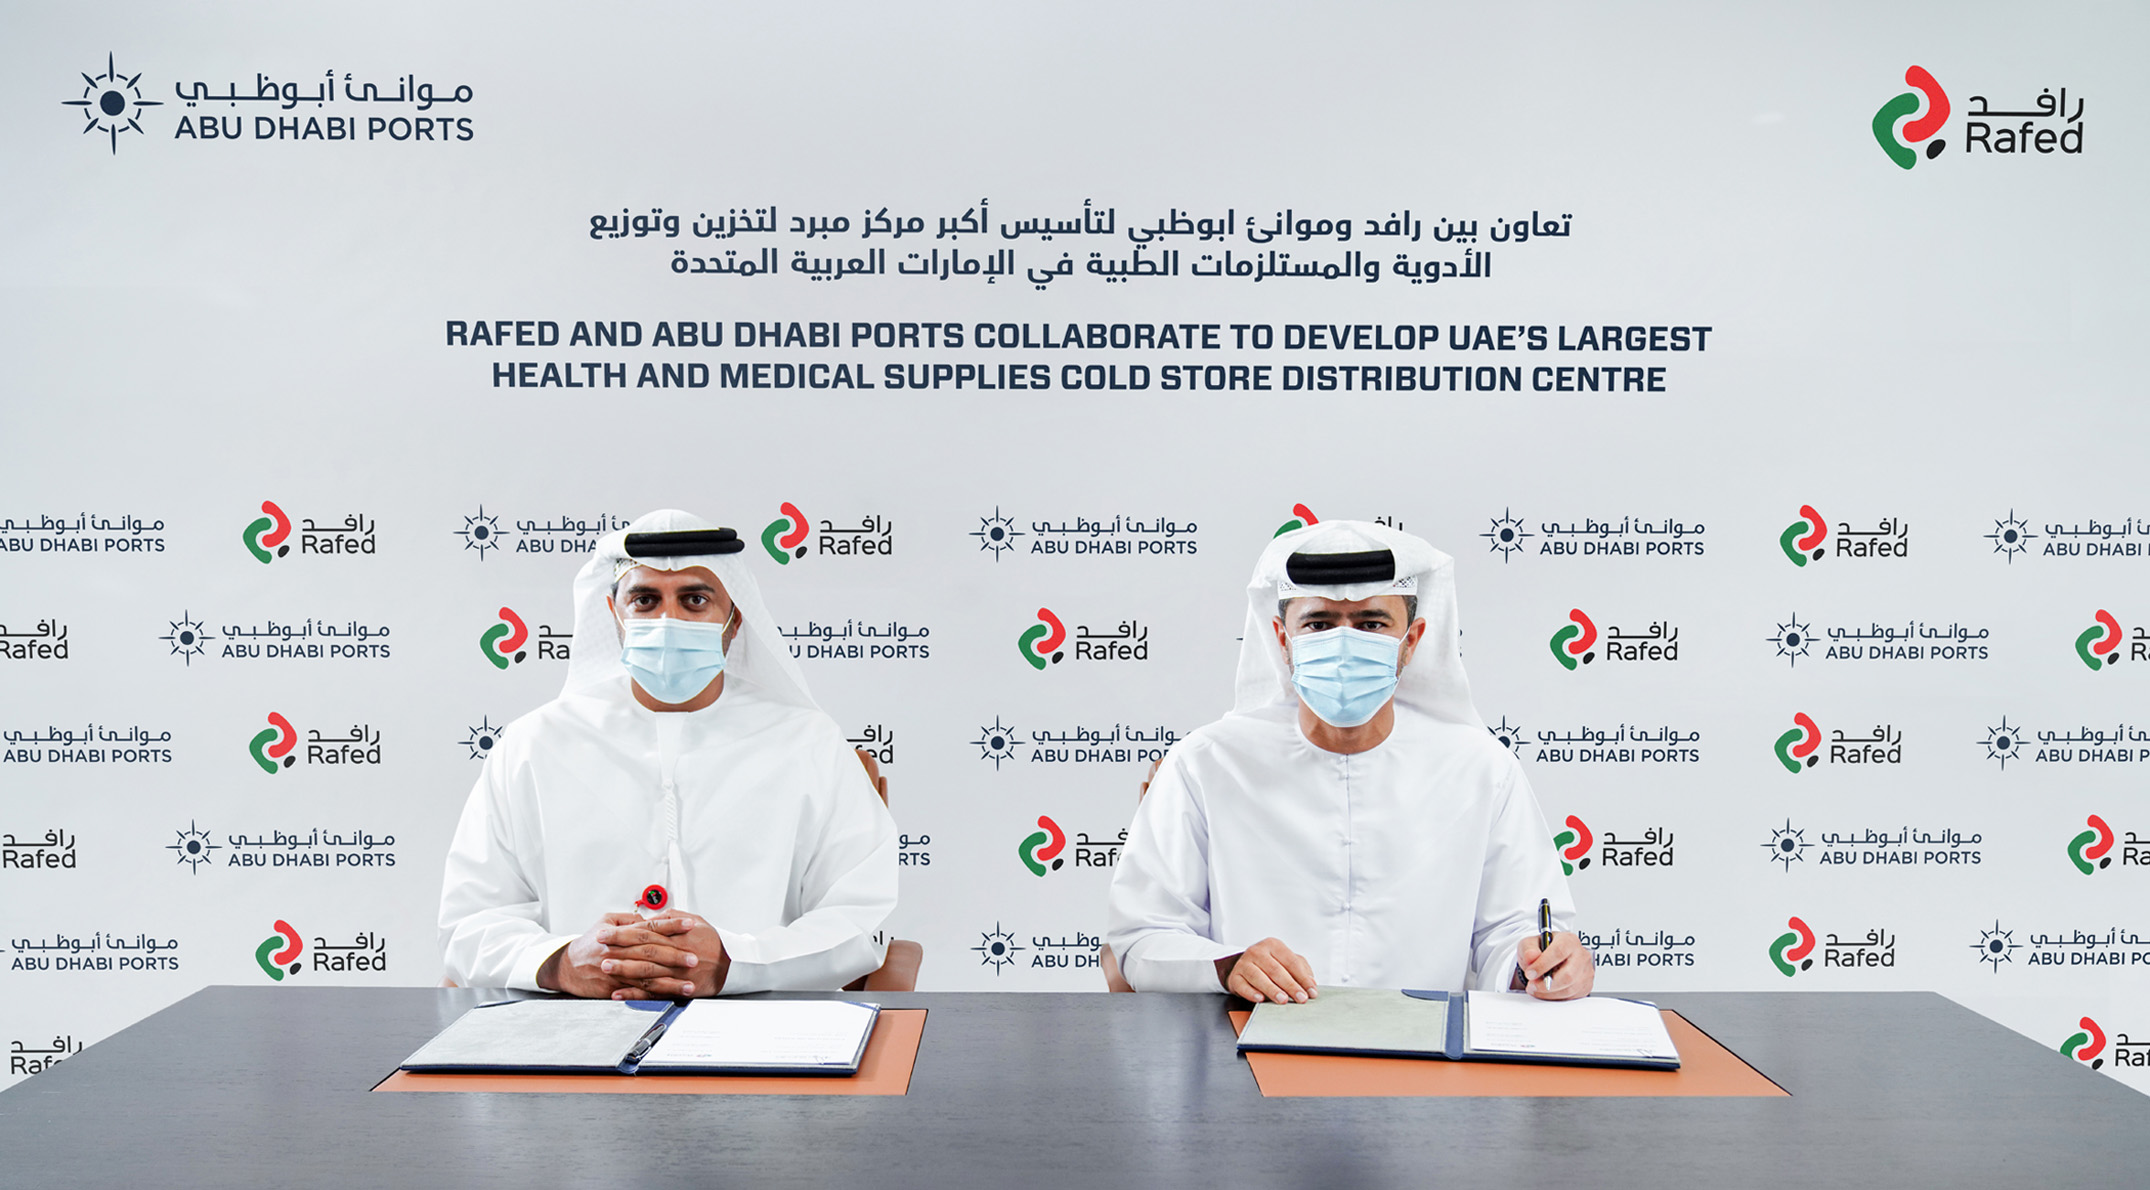 رافد وموانئ أبوظبي تتعاونان لإطلاق أكبر مركز مبرّد لتخزين وتوزيع الإمدادات الطبية والصحية